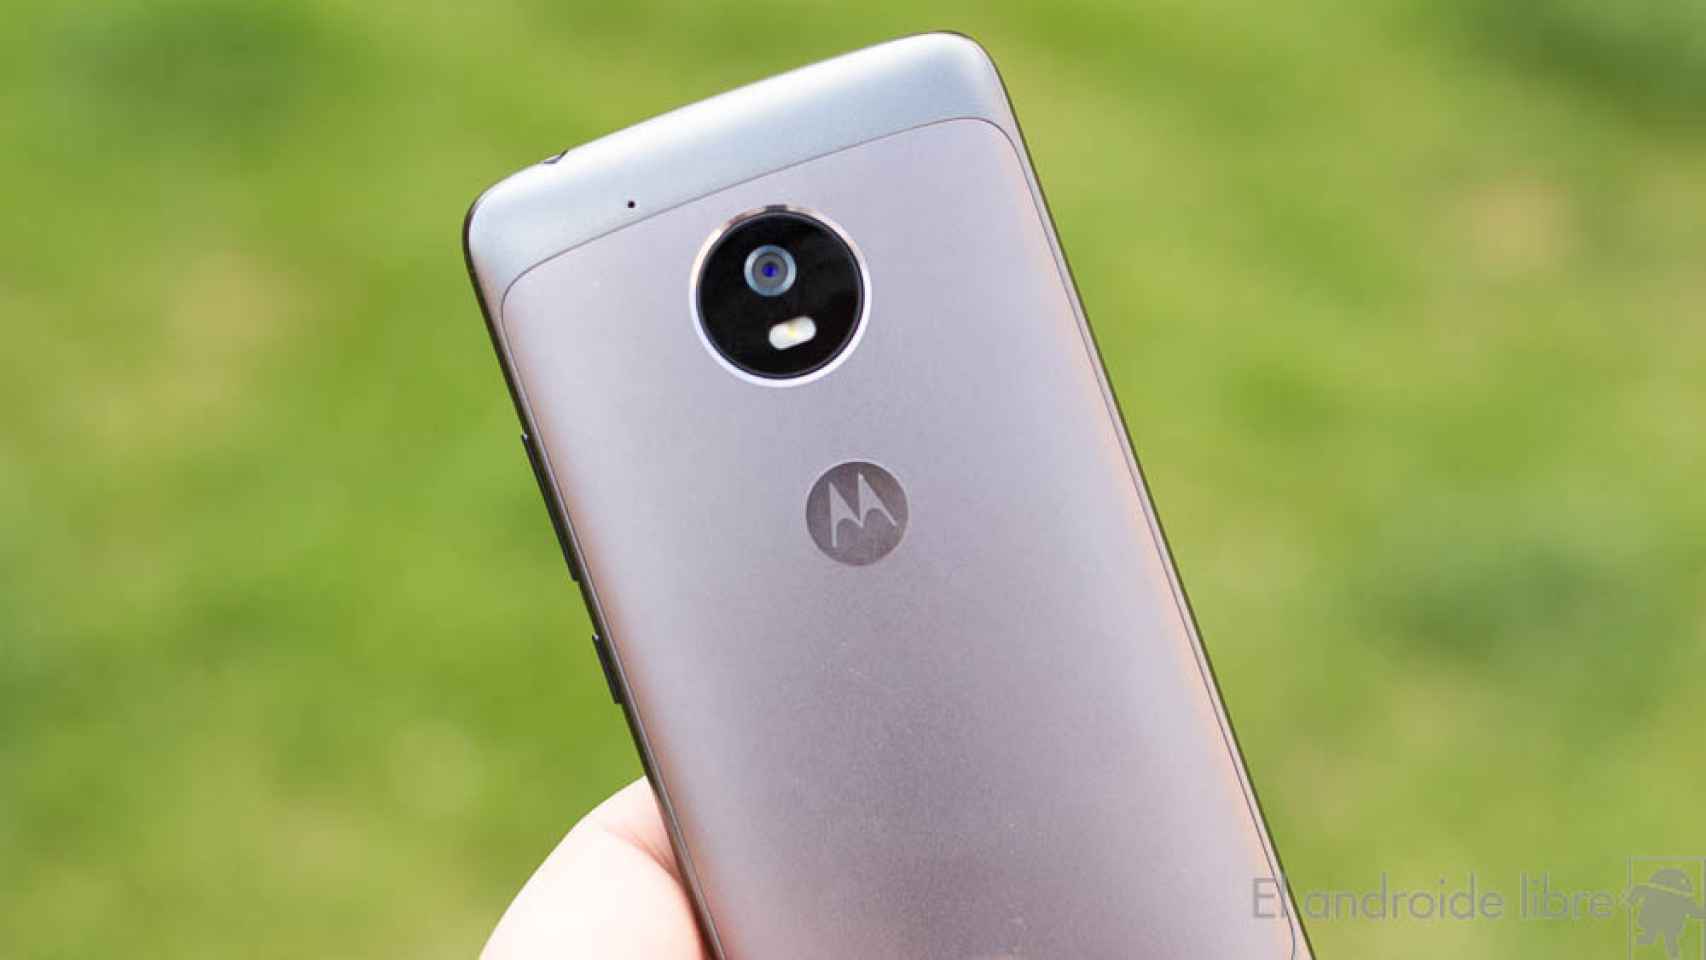 Novedades sobre el Motorola Moto X4 o Moto X 2017